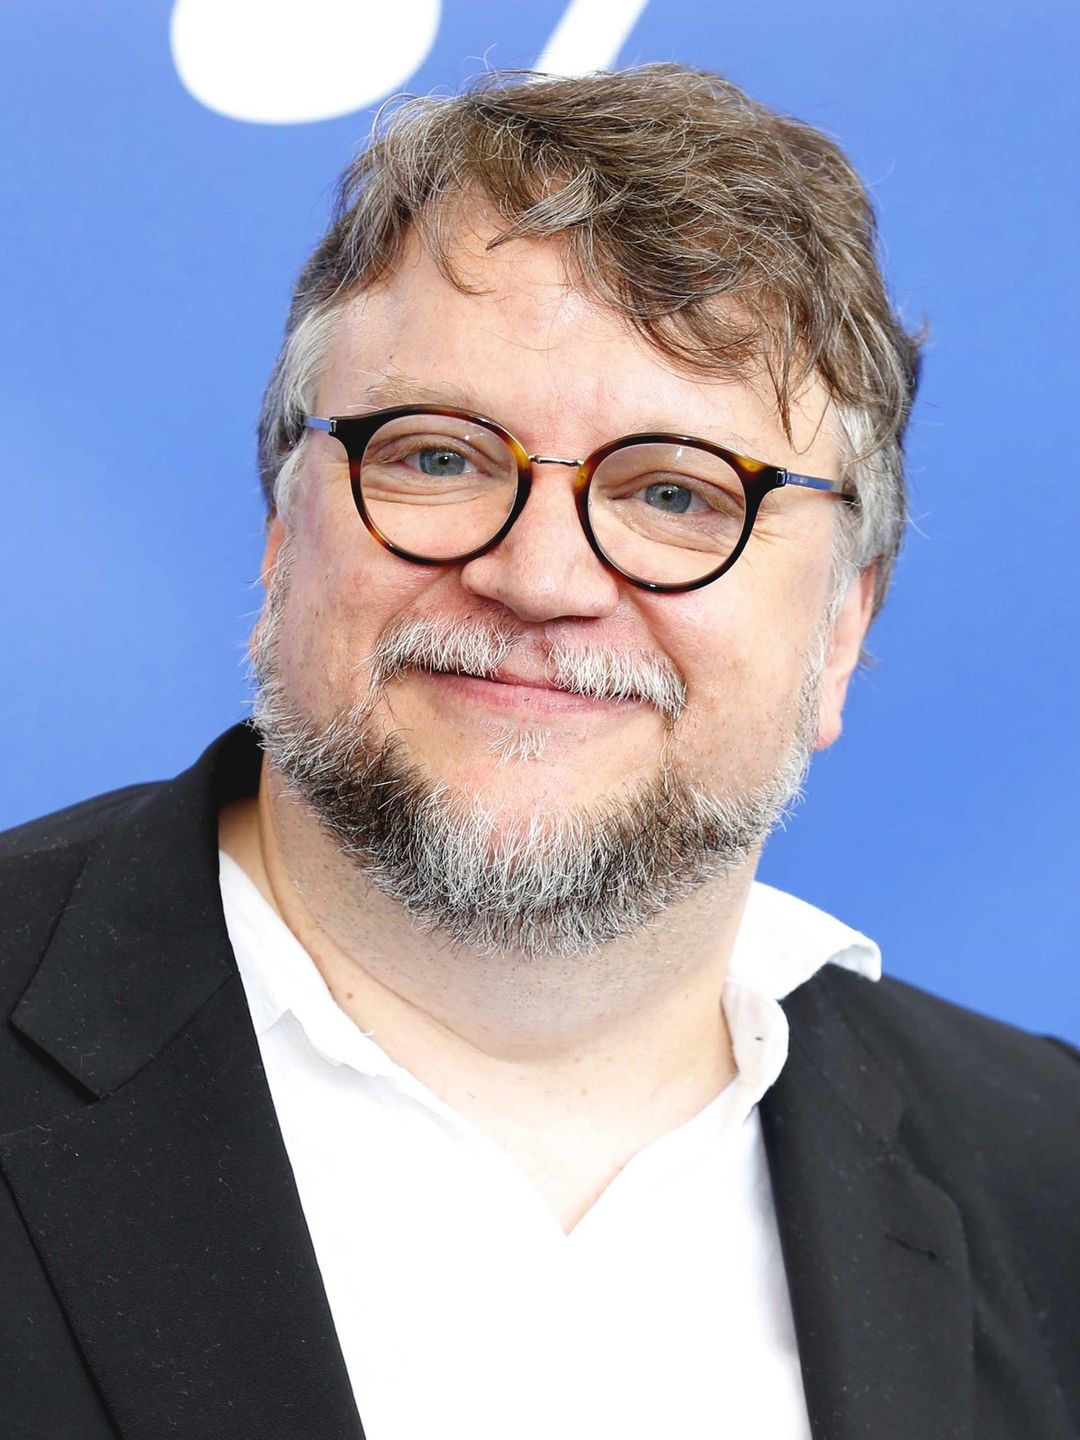 Guillermo del Toro dating history